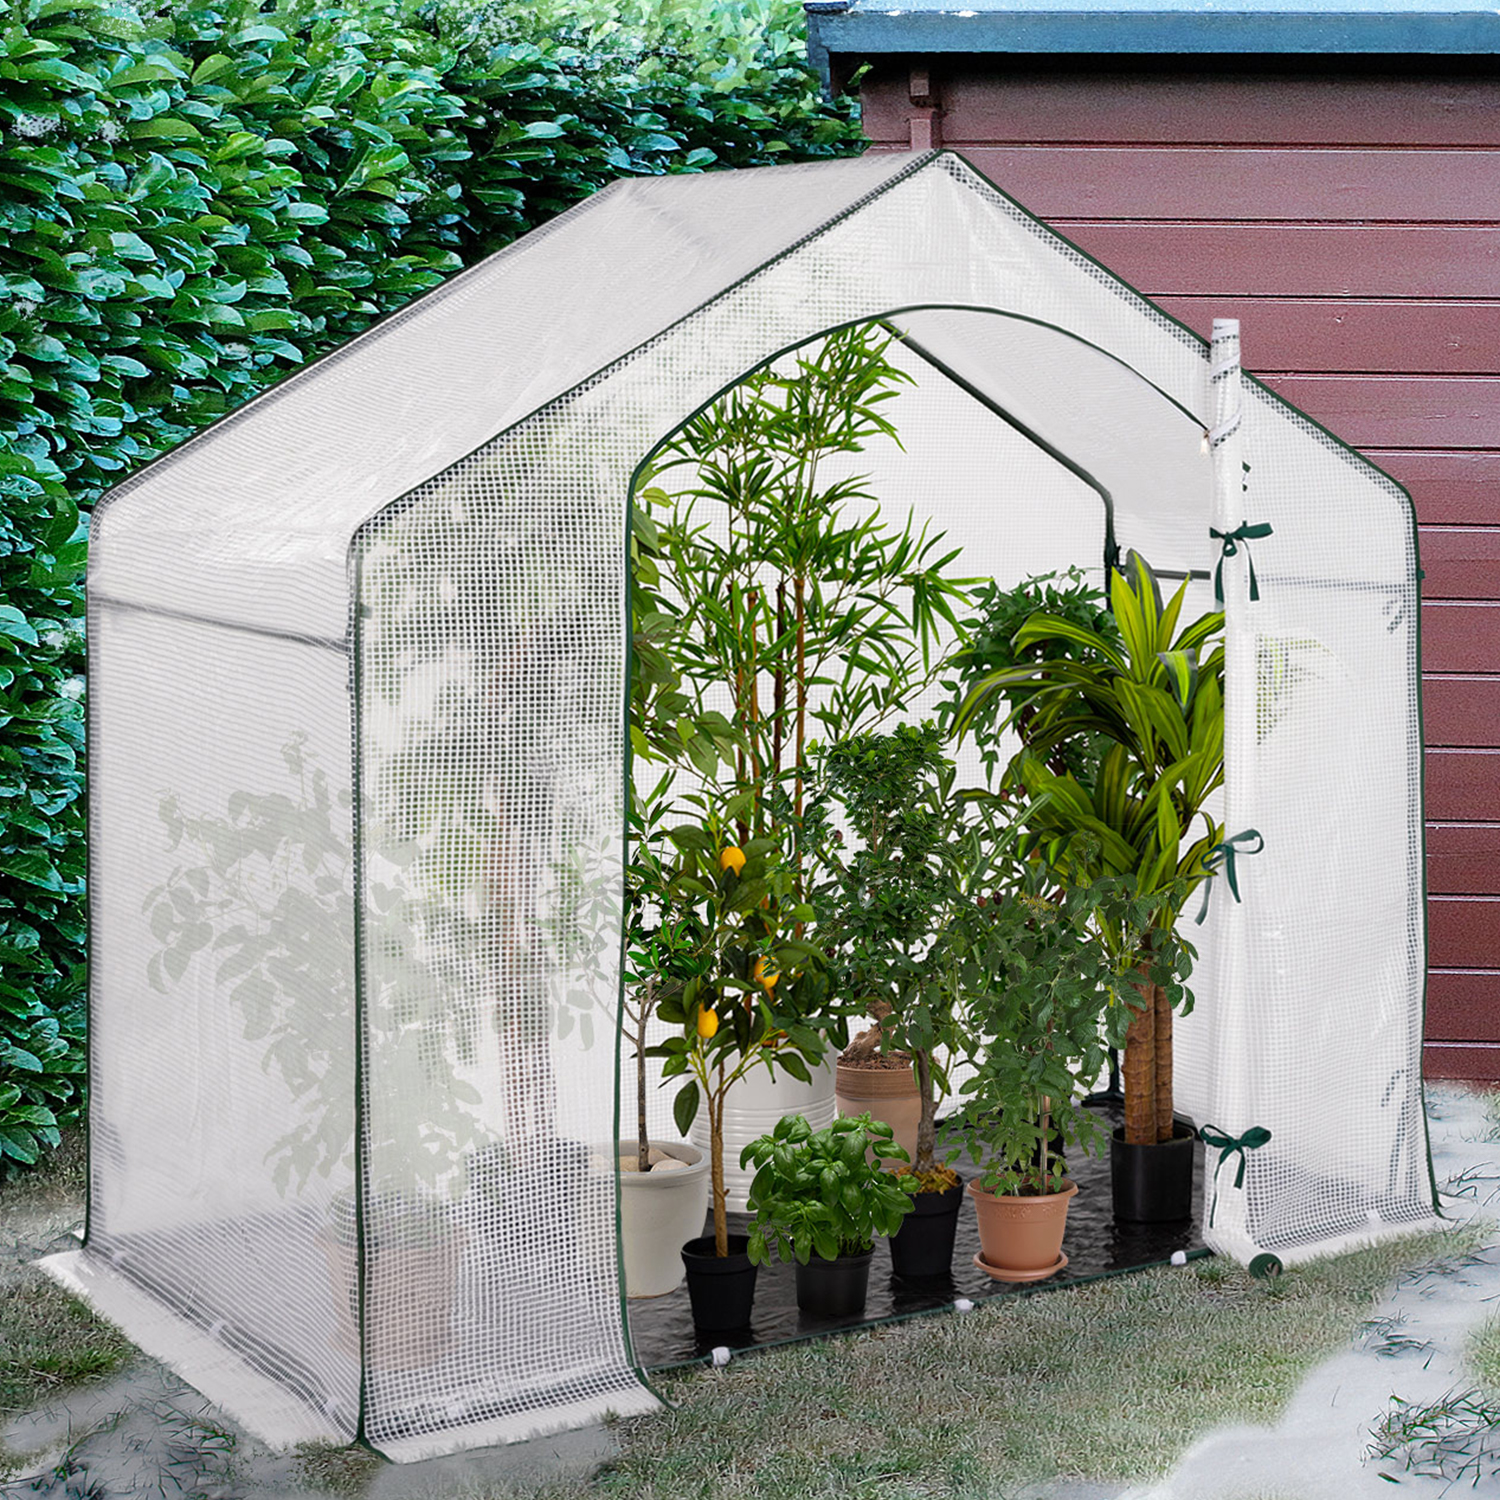 Housse d'hivernage pour plante et arbuste - ID MARKET - 120 x 180